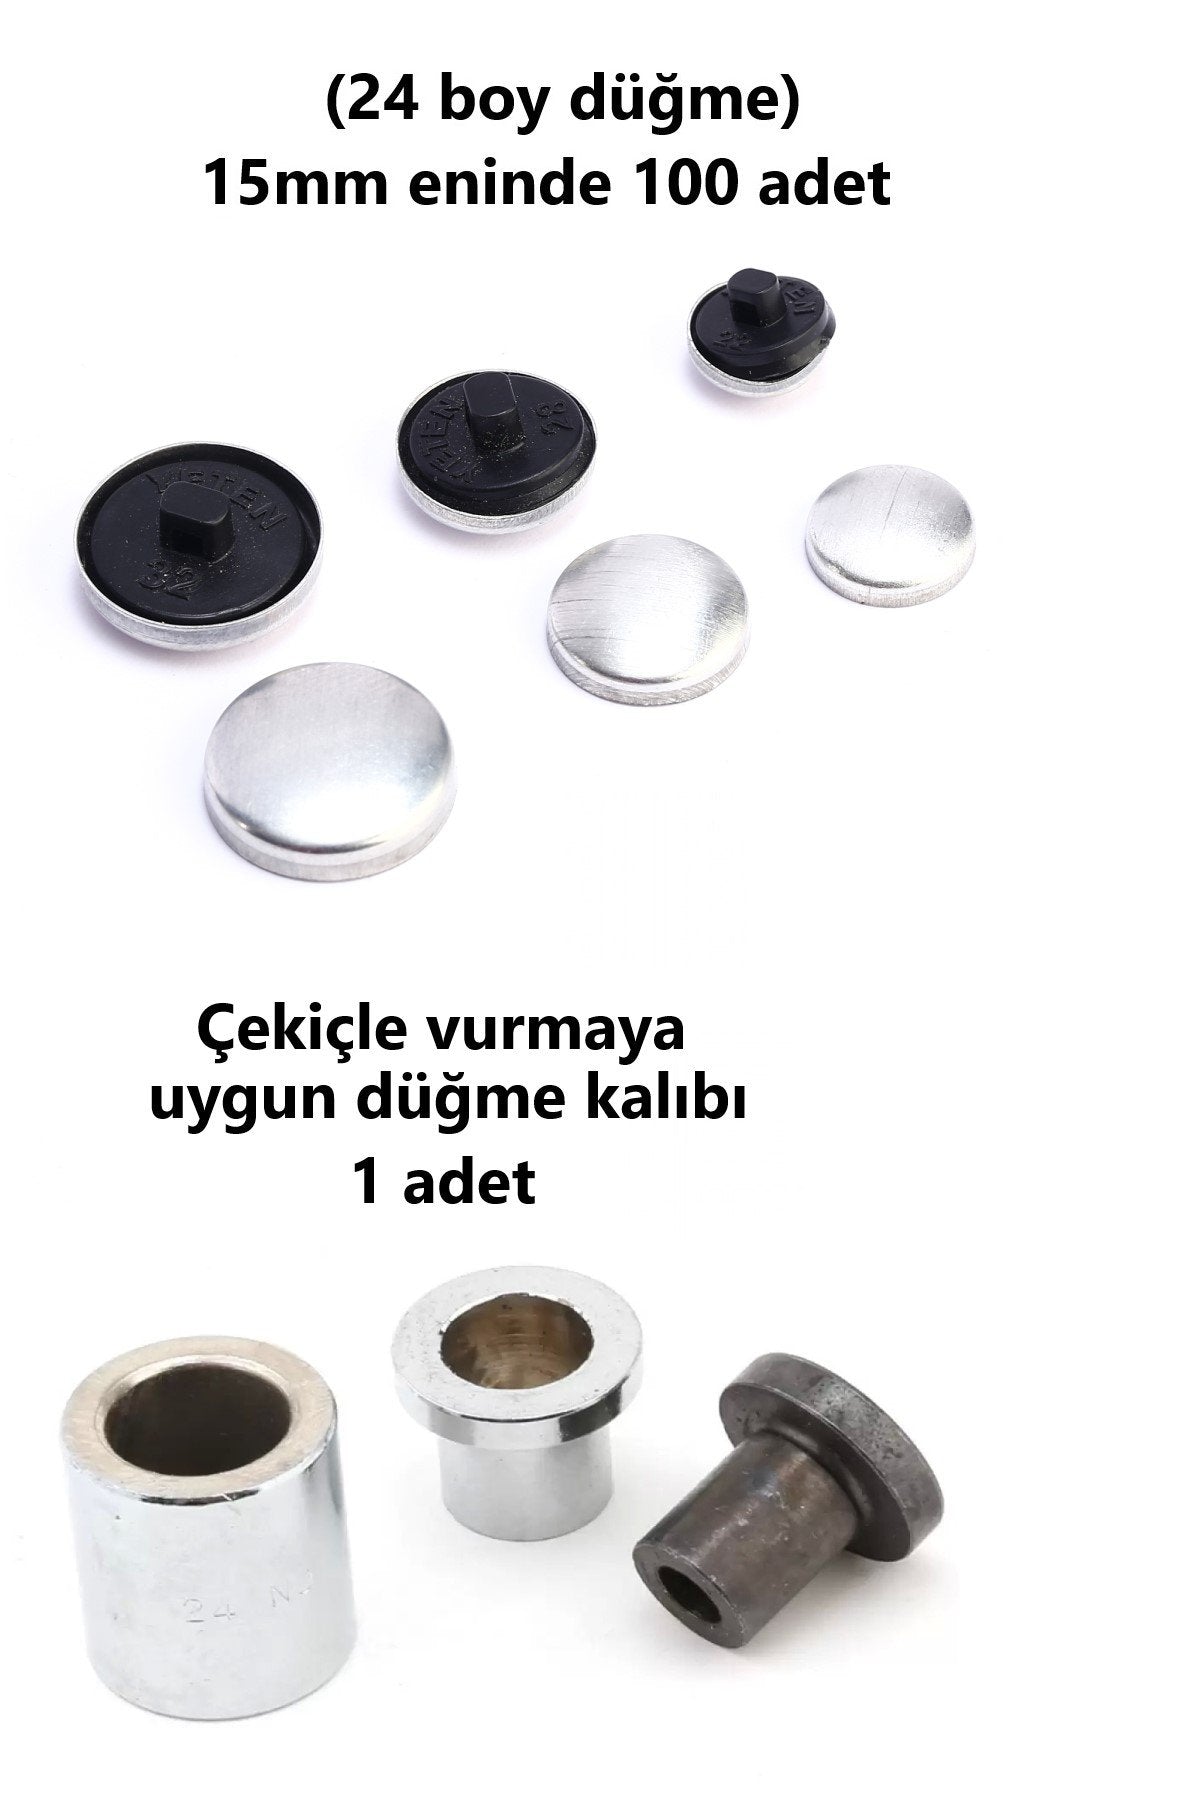 Kumaş Kaplama Düğme Yapım Seti - (24 Boy) 100 adet Düğme ve Kalıp  (15mm)